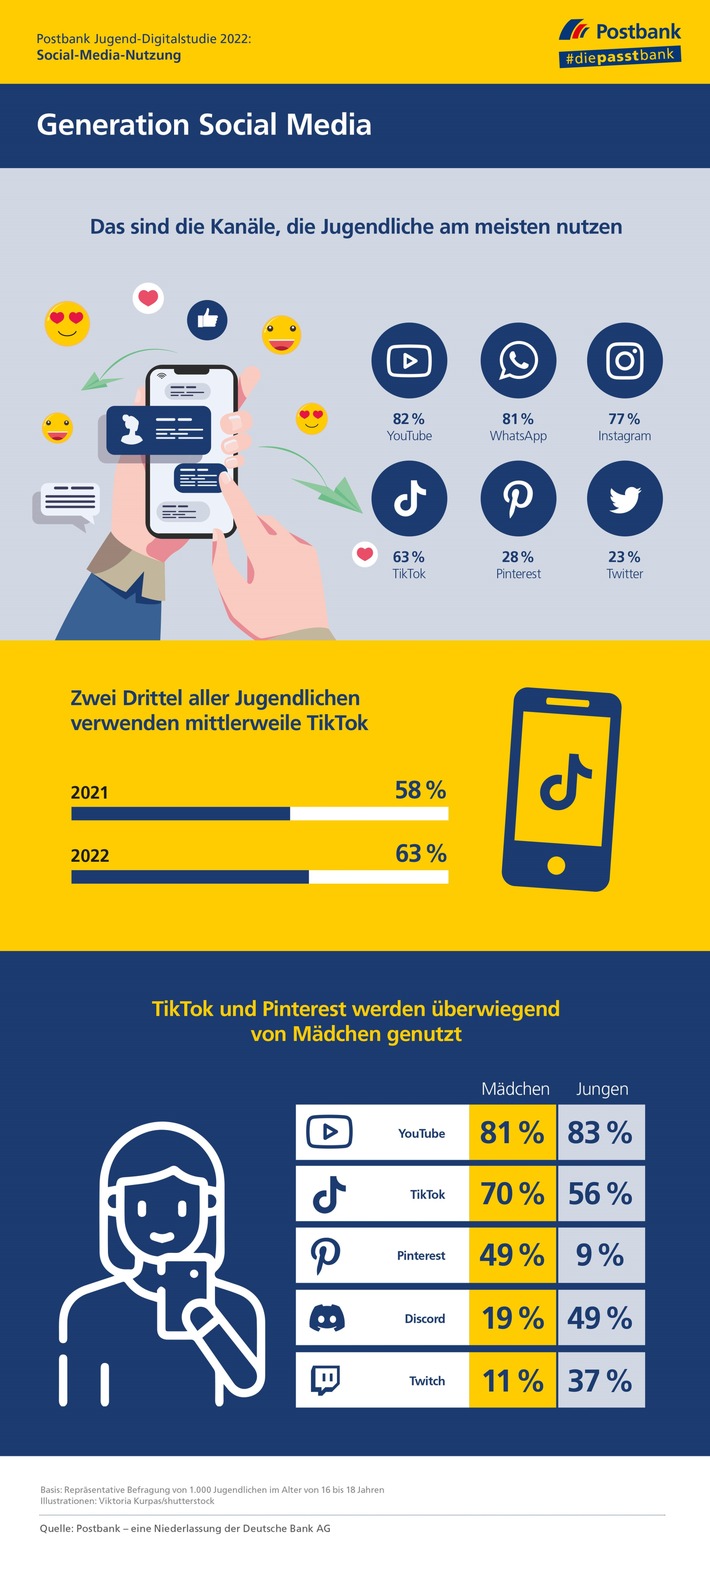 Postbank Jugend-Digitalstudie 2022 - Social Media: Mädchen nutzen Pinterest, Jungen Discord und Twitch